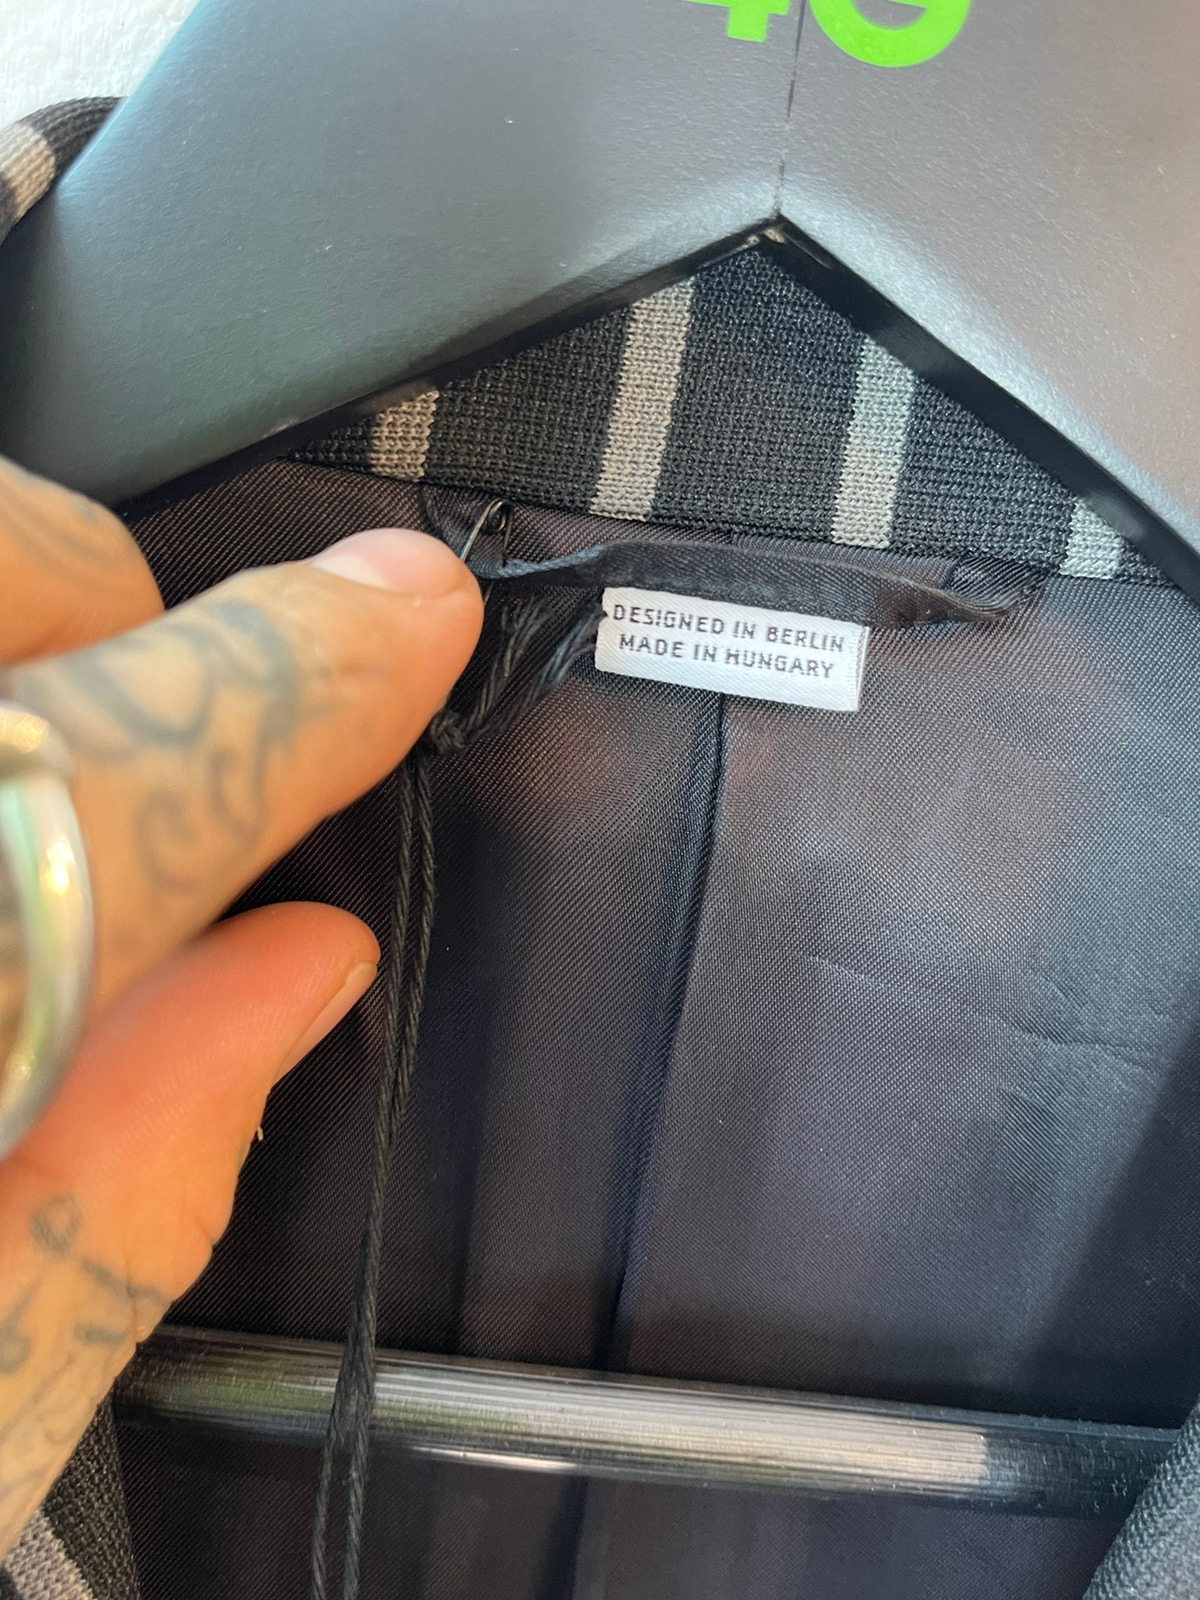 Random iDentities NEW stripped Blazer Sport Jacket US36 EU46